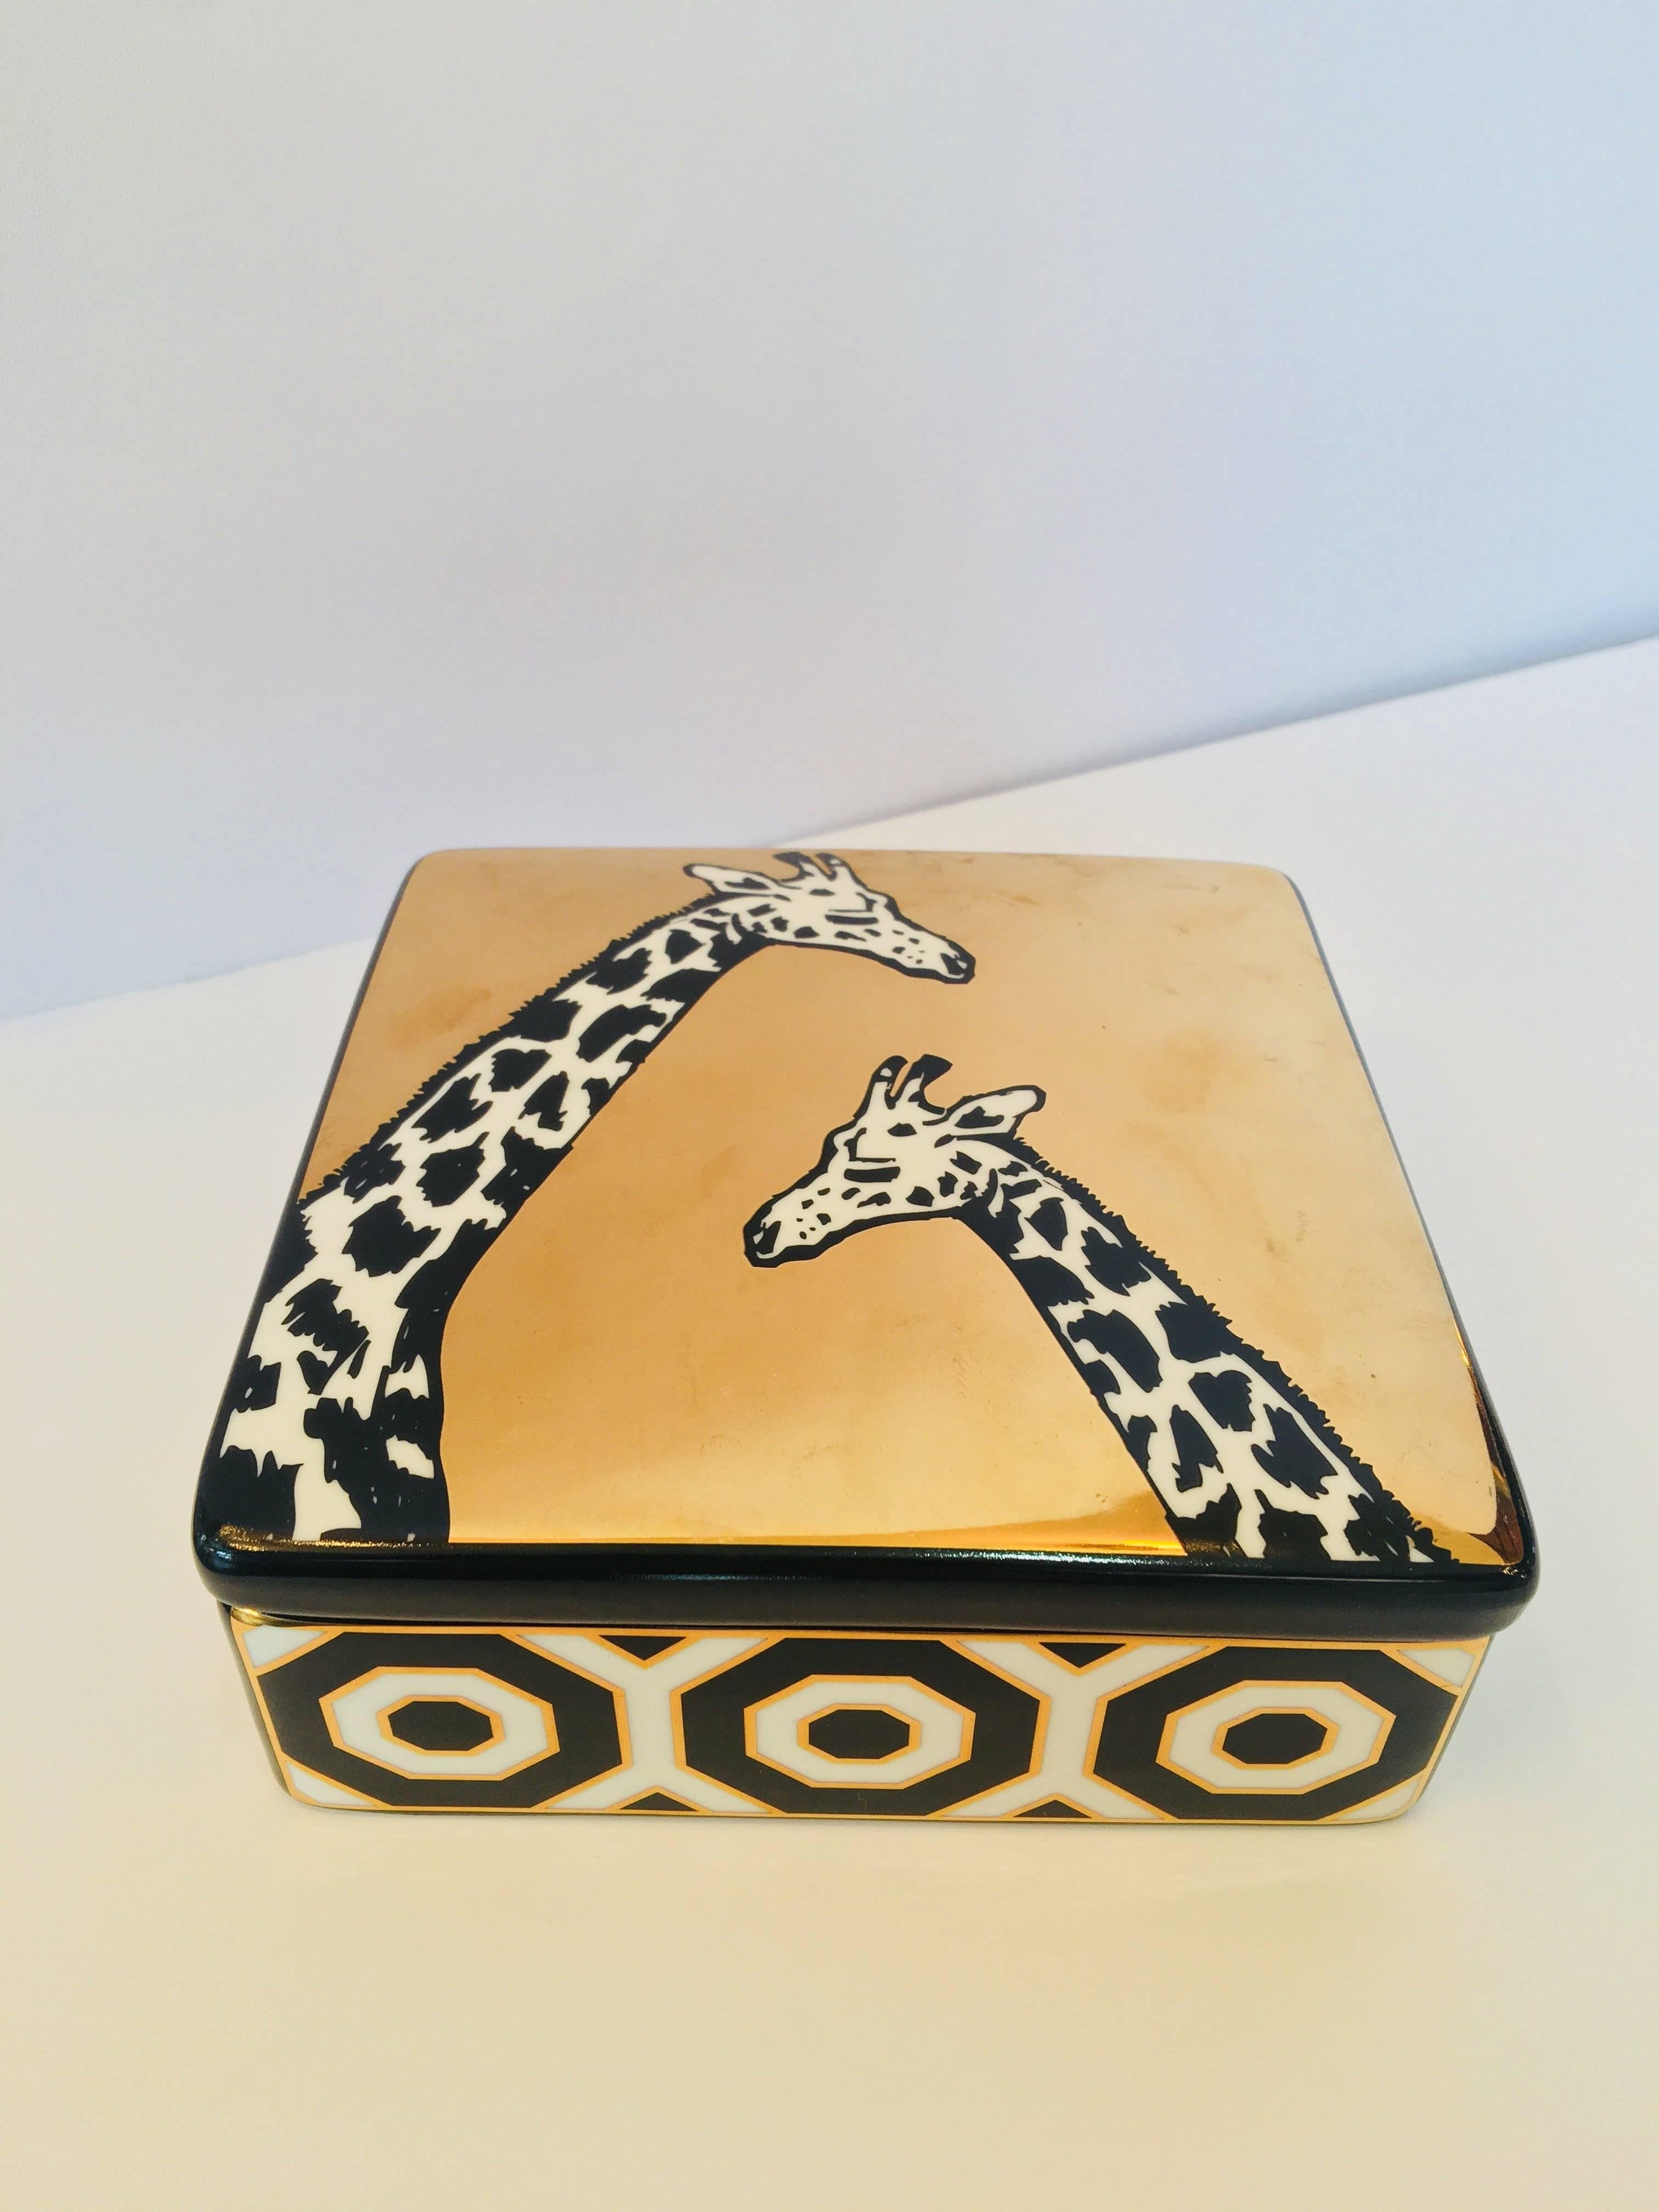 Handmade Jonathan Adler square trinket giraffe box.